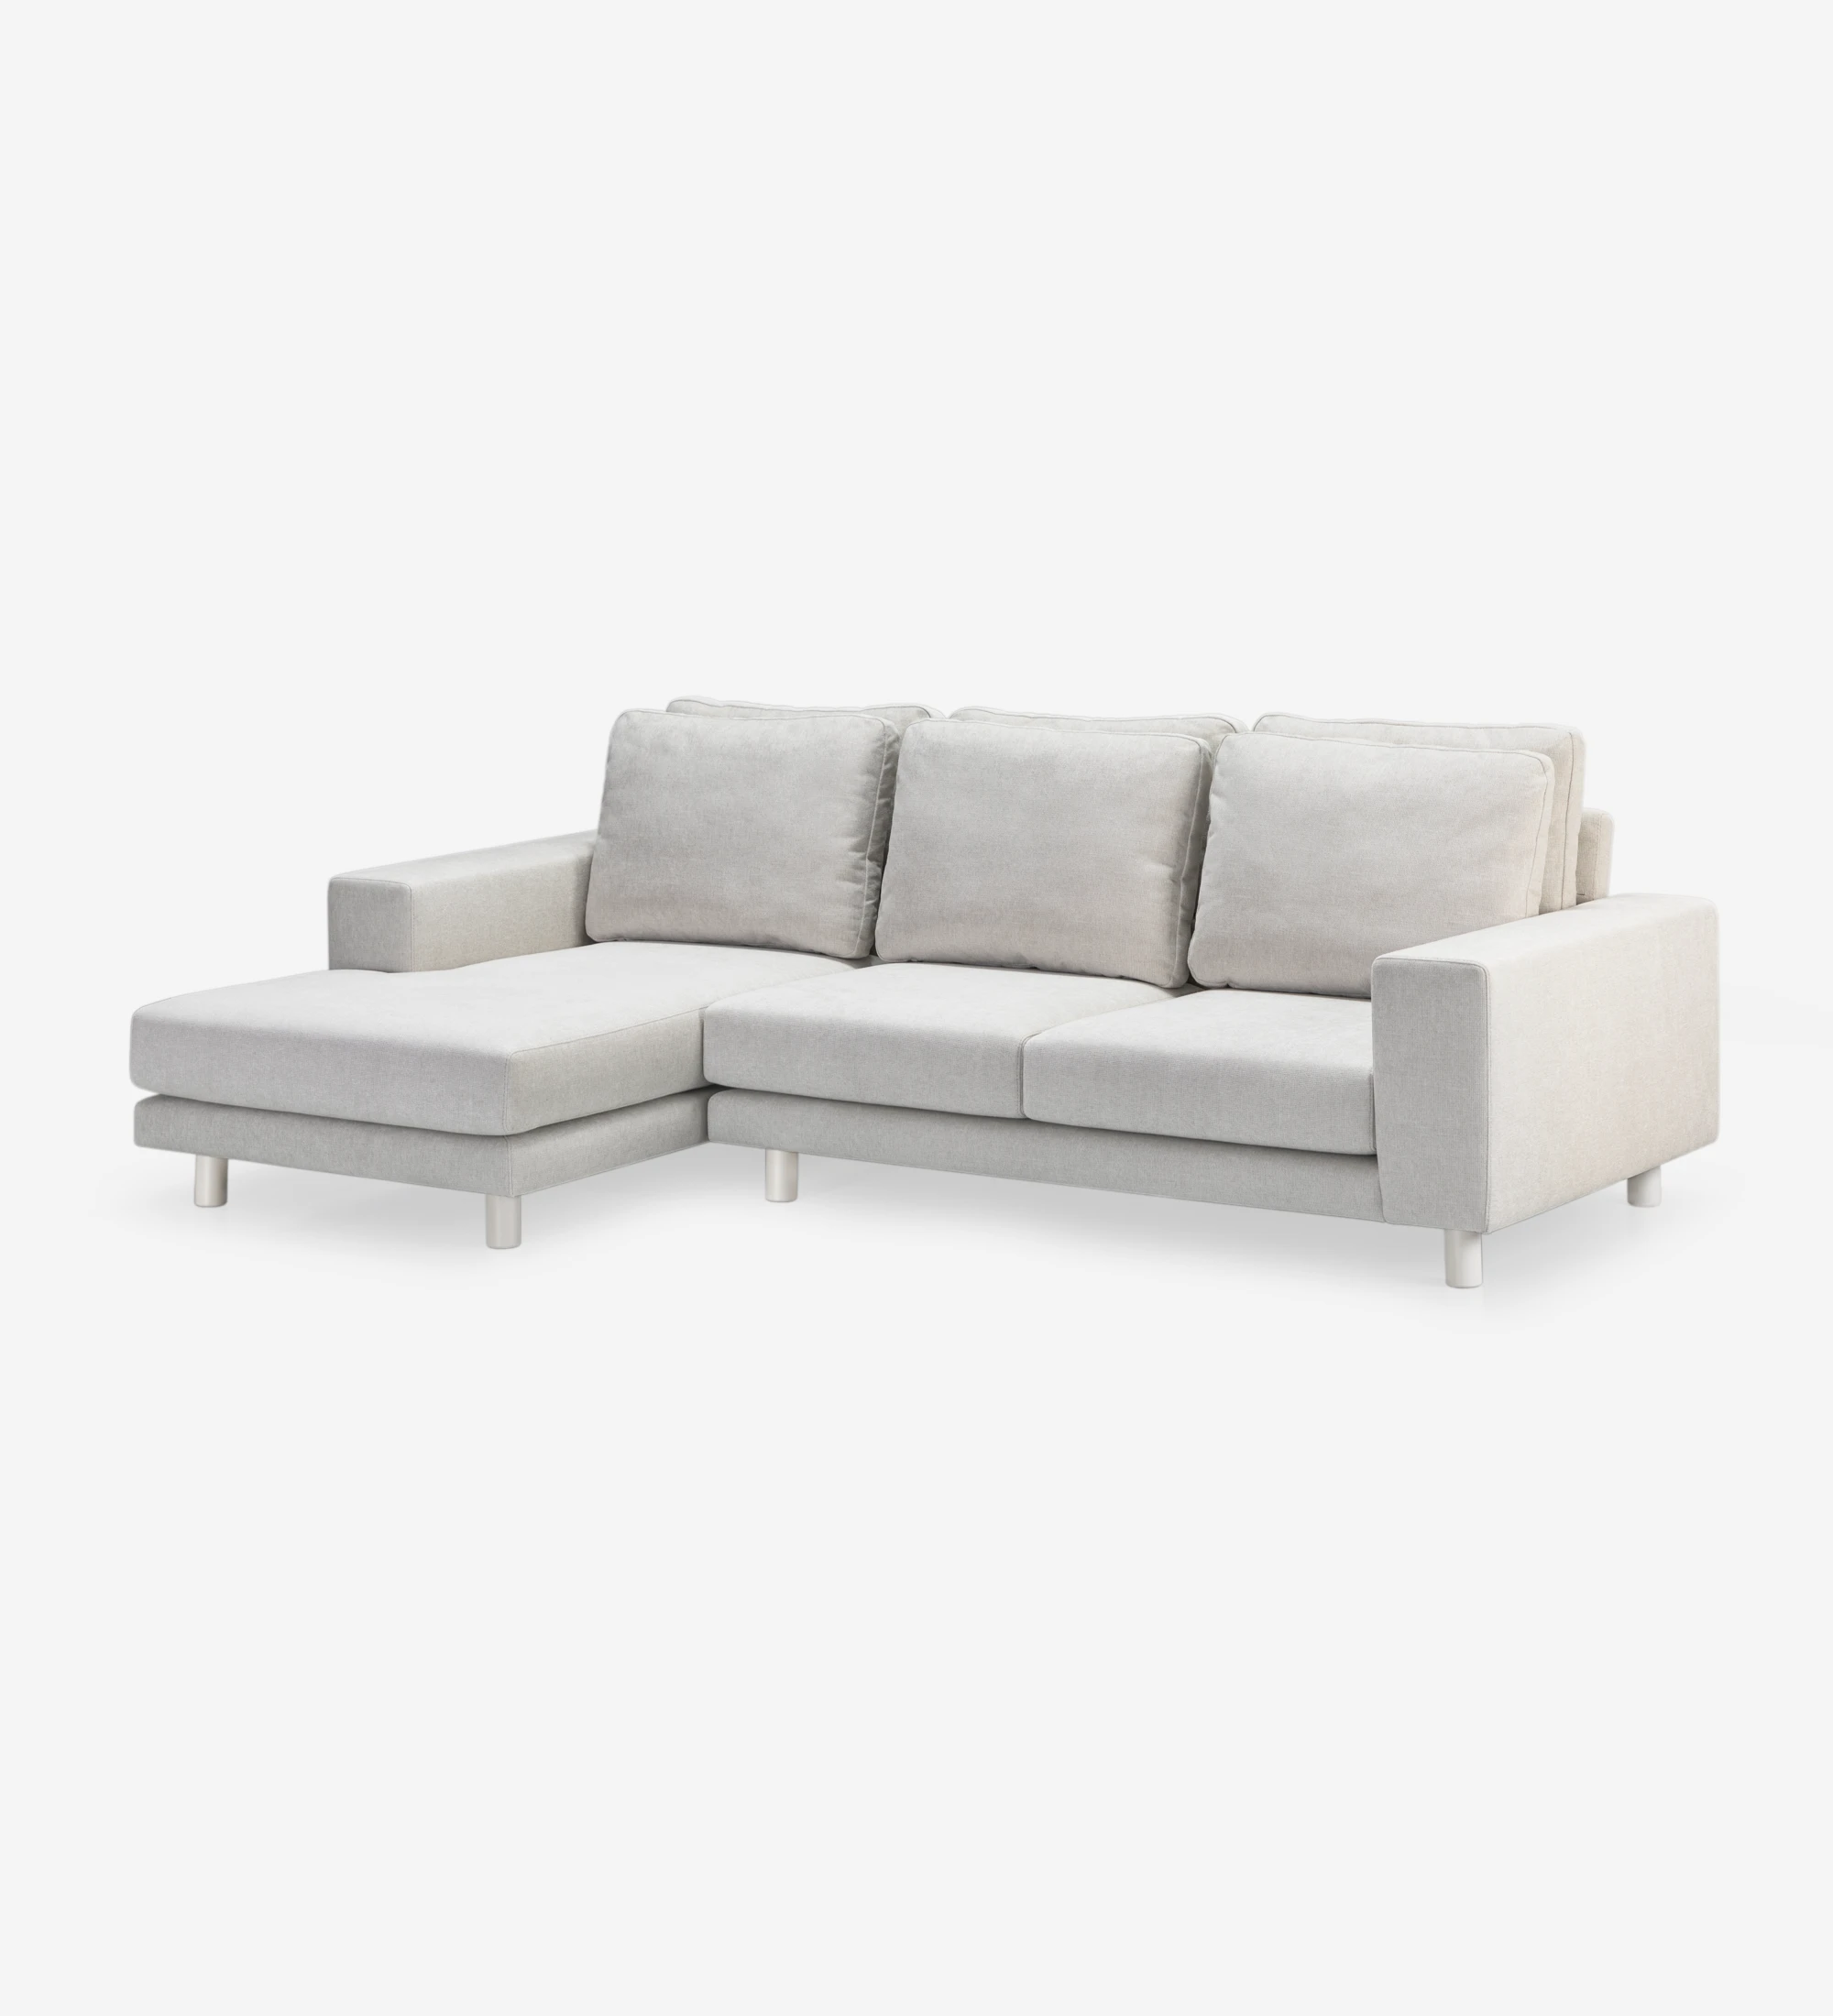 Sofá Dallas 2 plazas y chaise longue izquierda, tapizado en tela beige, cojines respaldo abatibles, pies lacados perla, 273 cm.